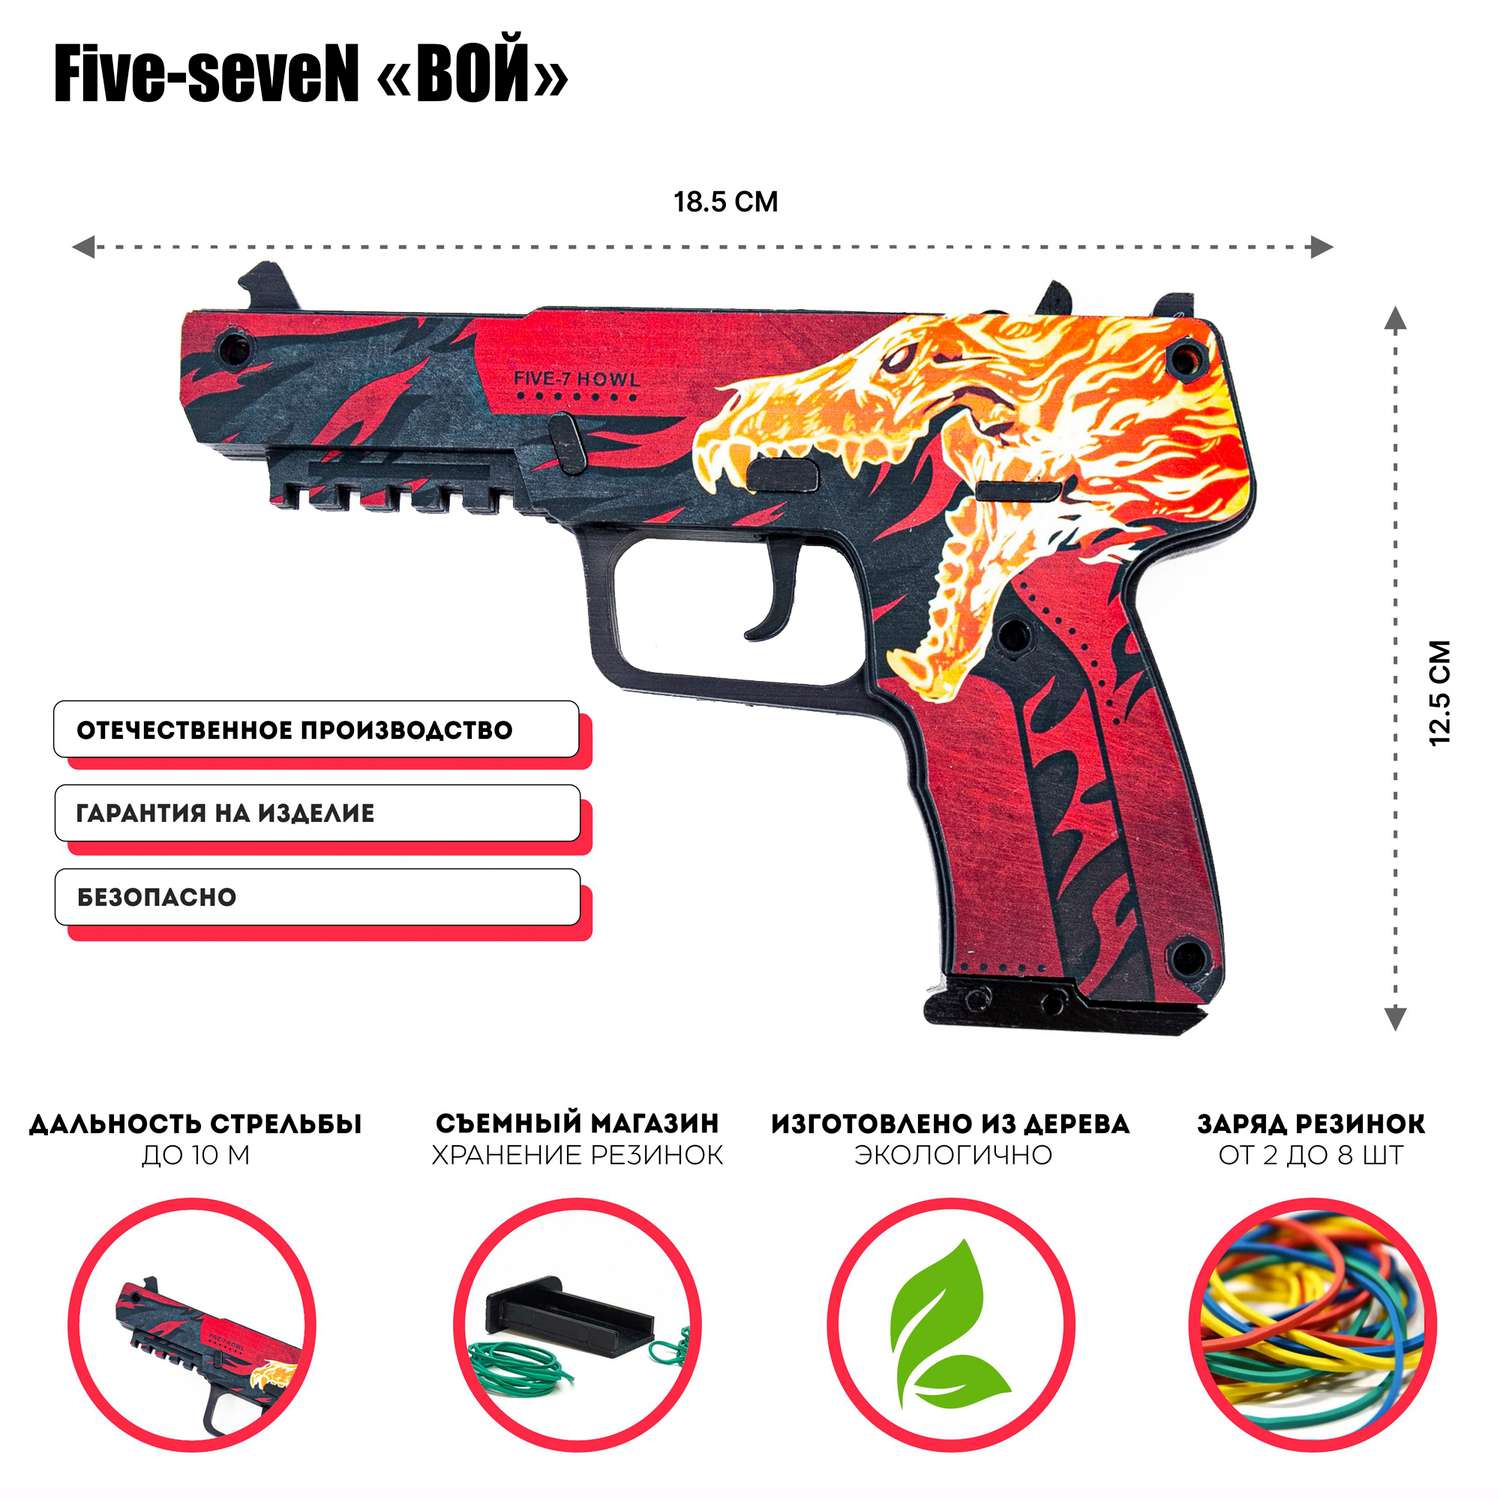 Деревянный пистолет Five-seveN PalisWood резинкострел Вой - фото 2